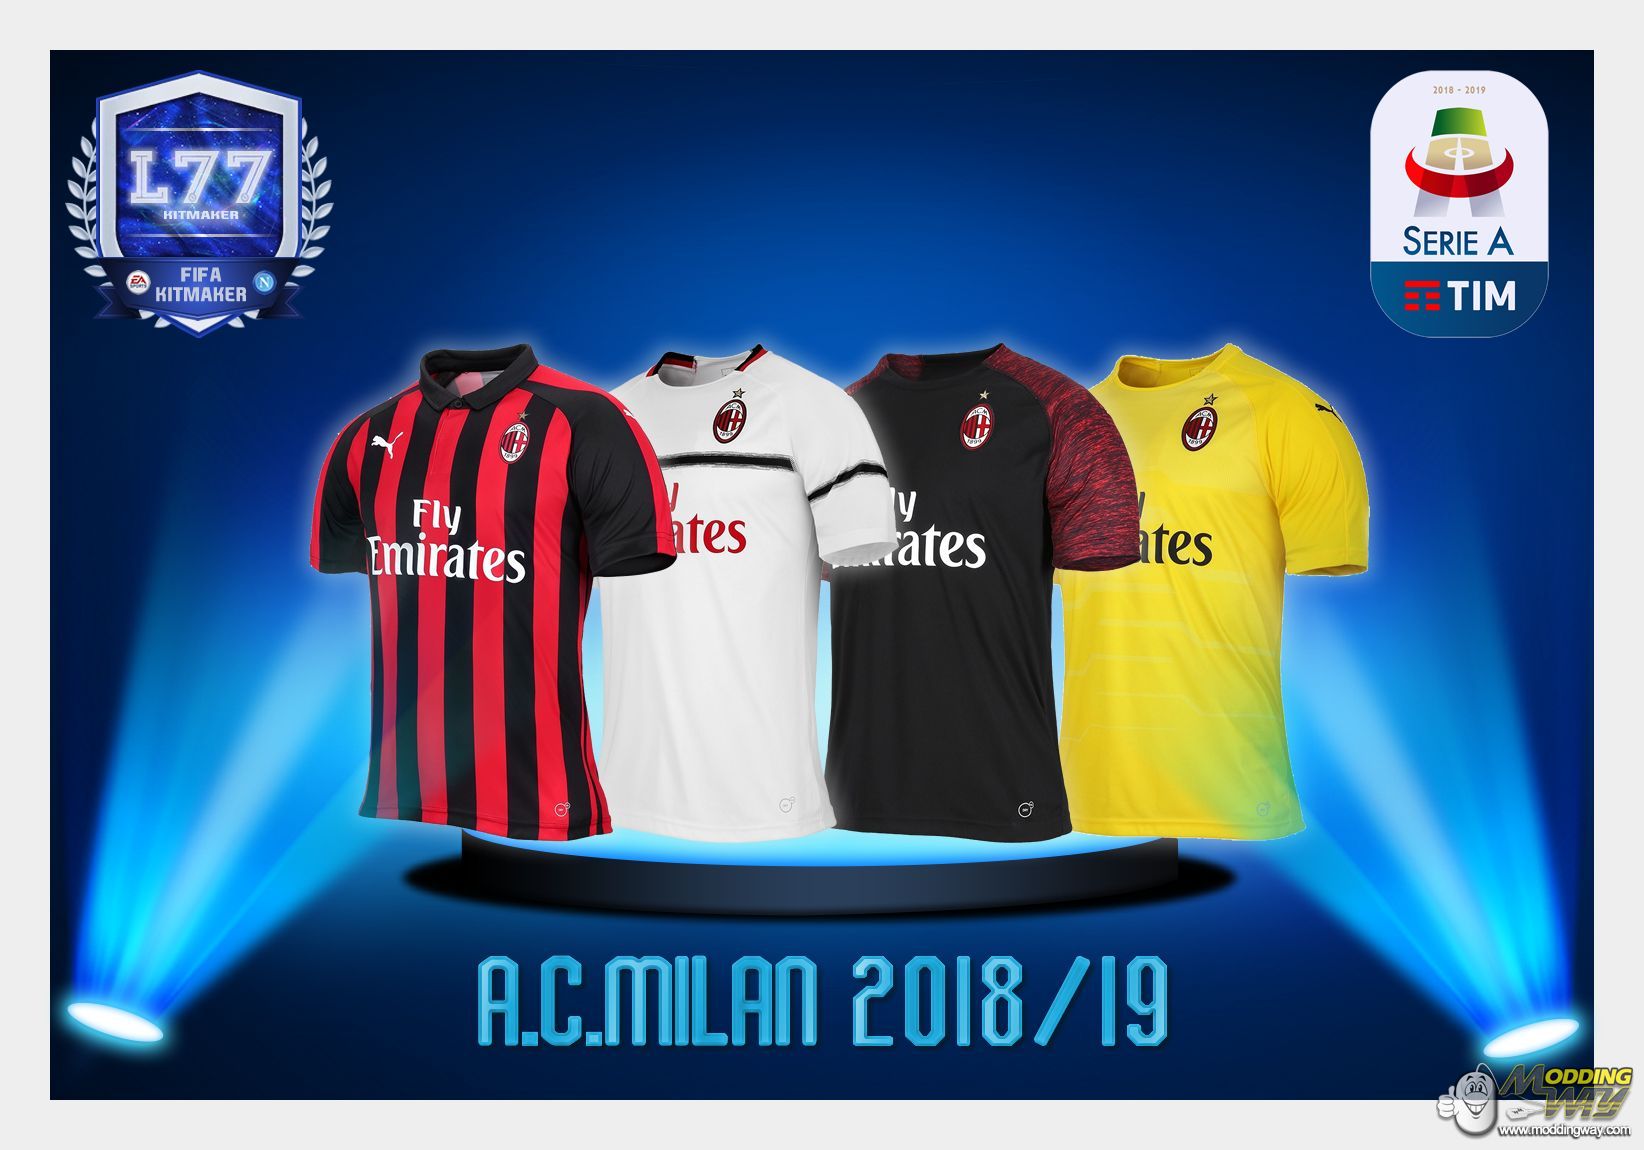 A.C. Milan 2018/19 - FIFA 18 at